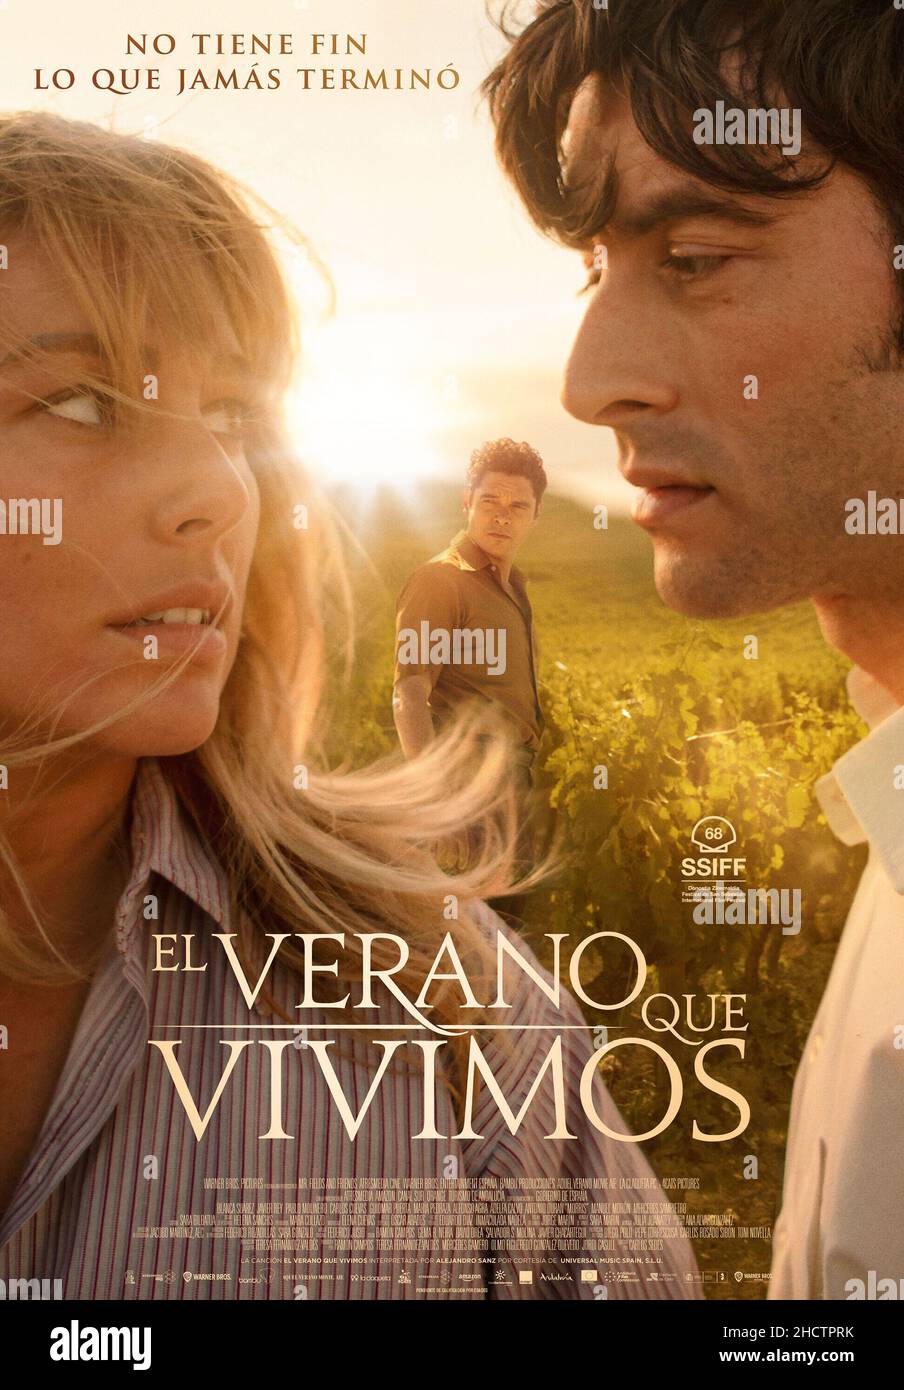 BLANCA SUAREZ et JAVIER REY dans EL VERANO que VIVIMIMOS (2020), réalisé par CARLOS SEDES. CREDIT: 4 CATS PHOTOS/ATRESMEDIA CINE/BAMBU PRPDUCCIONES/CLAQUETA, / ALBUM Banque D'Images